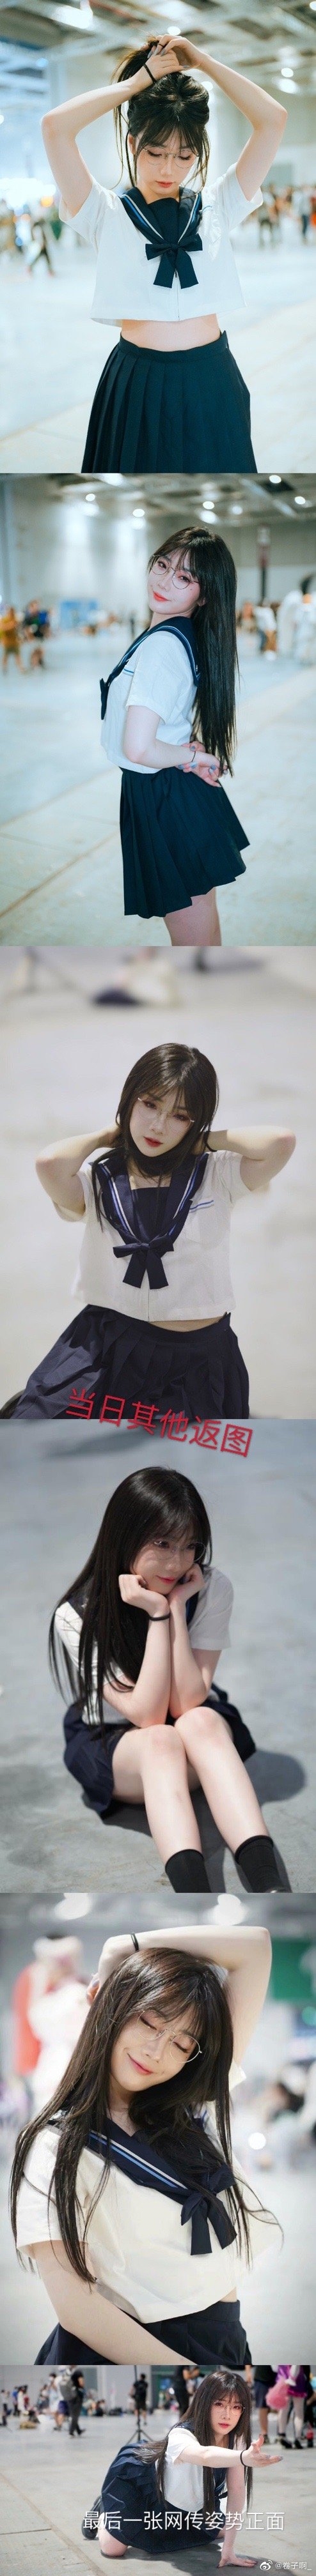 上海漫展女生穿jk摆pose惹热议 本人回应:没想到有人跑到后方拍摄